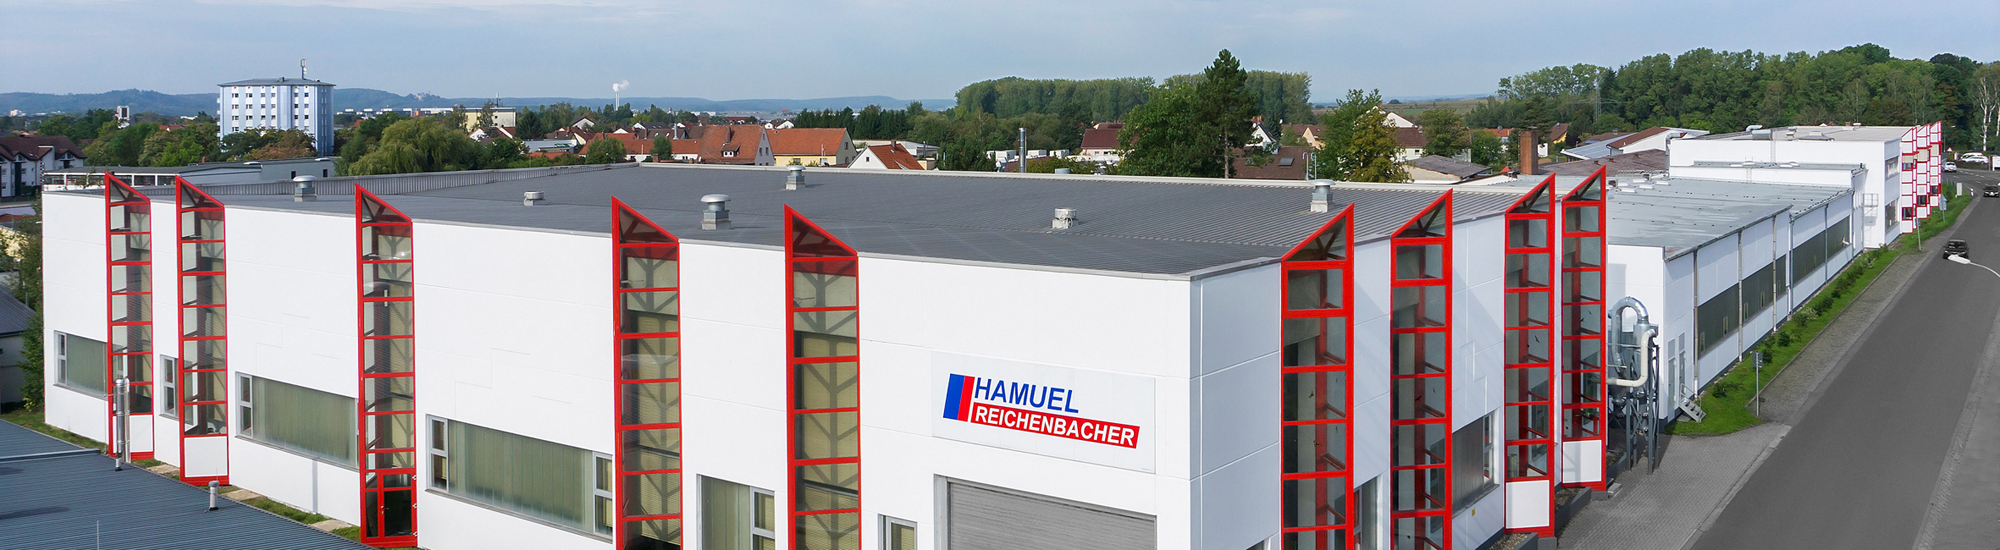 Reichenbacher Hamuel GmbH